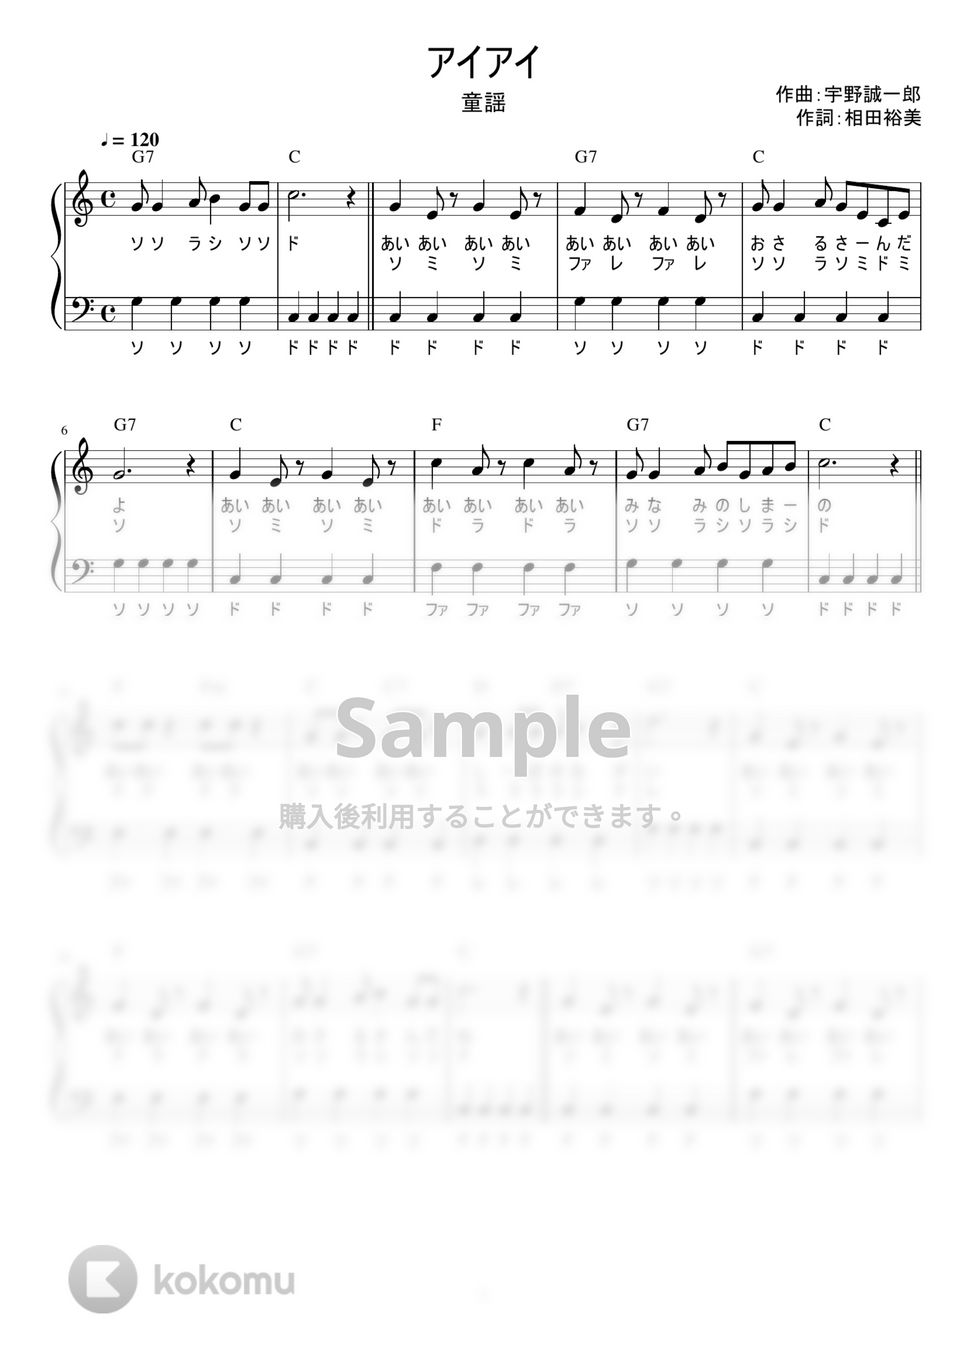 アイアイ (かんたん / 歌詞付き / ドレミ付き / 初心者) by piano.tokyo